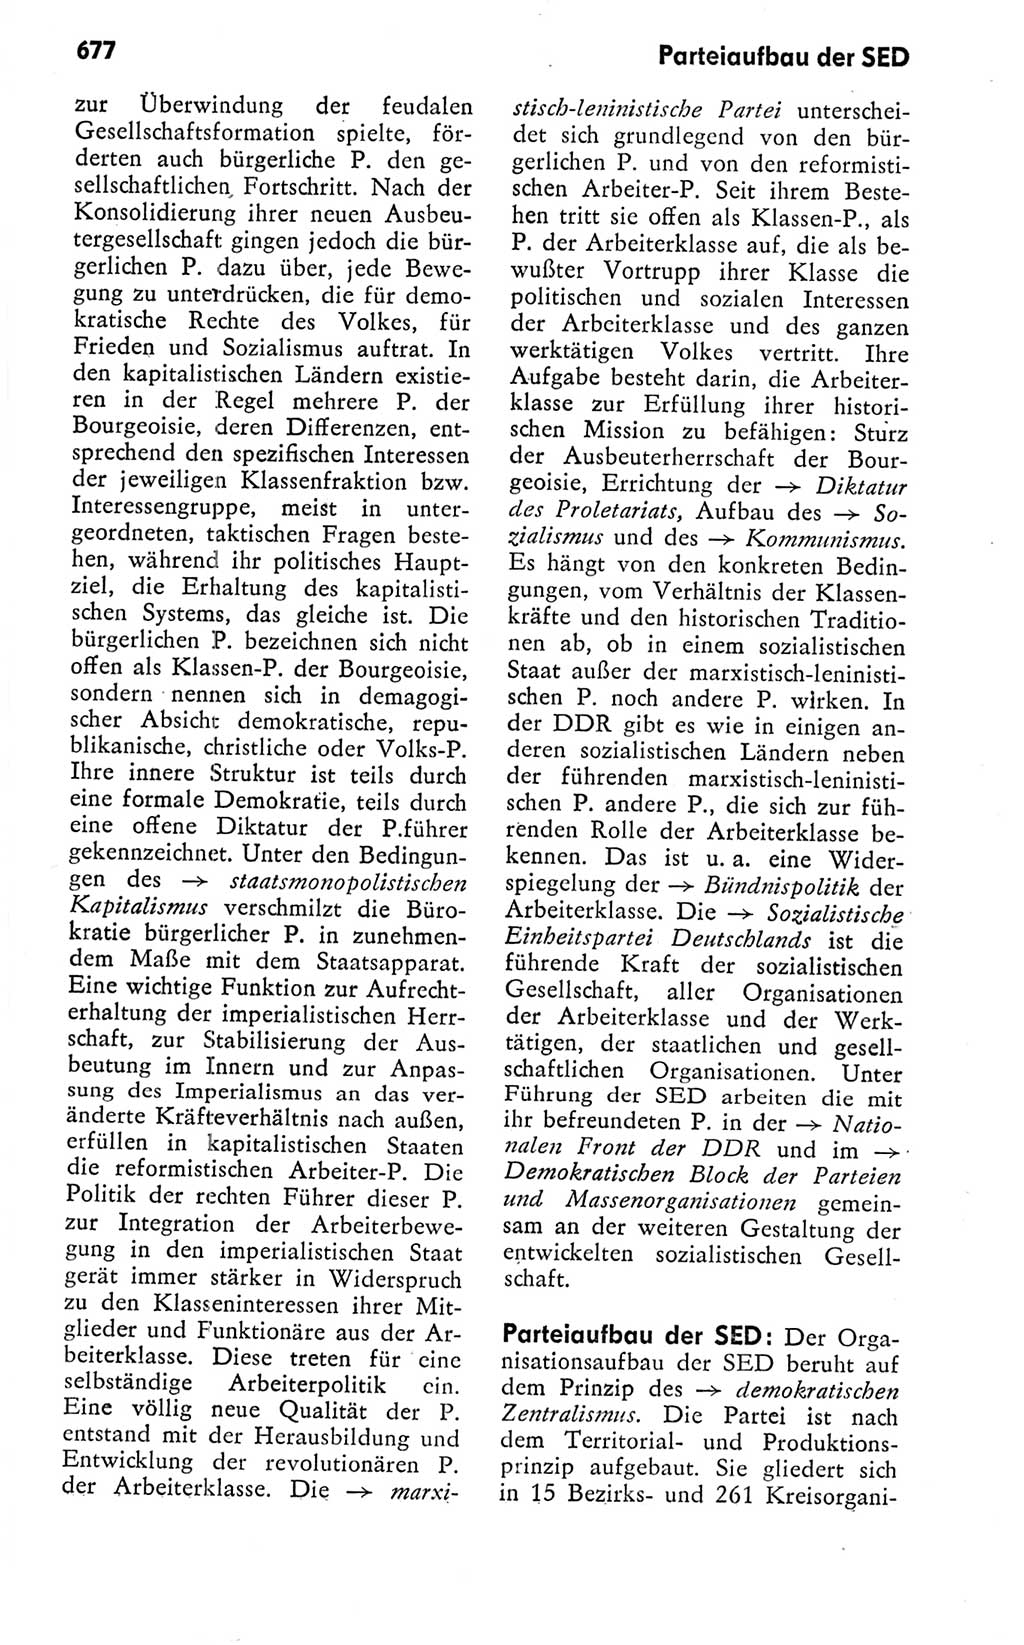 Kleines politisches Wörterbuch [Deutsche Demokratische Republik (DDR)] 1978, Seite 677 (Kl. pol. Wb. DDR 1978, S. 677)